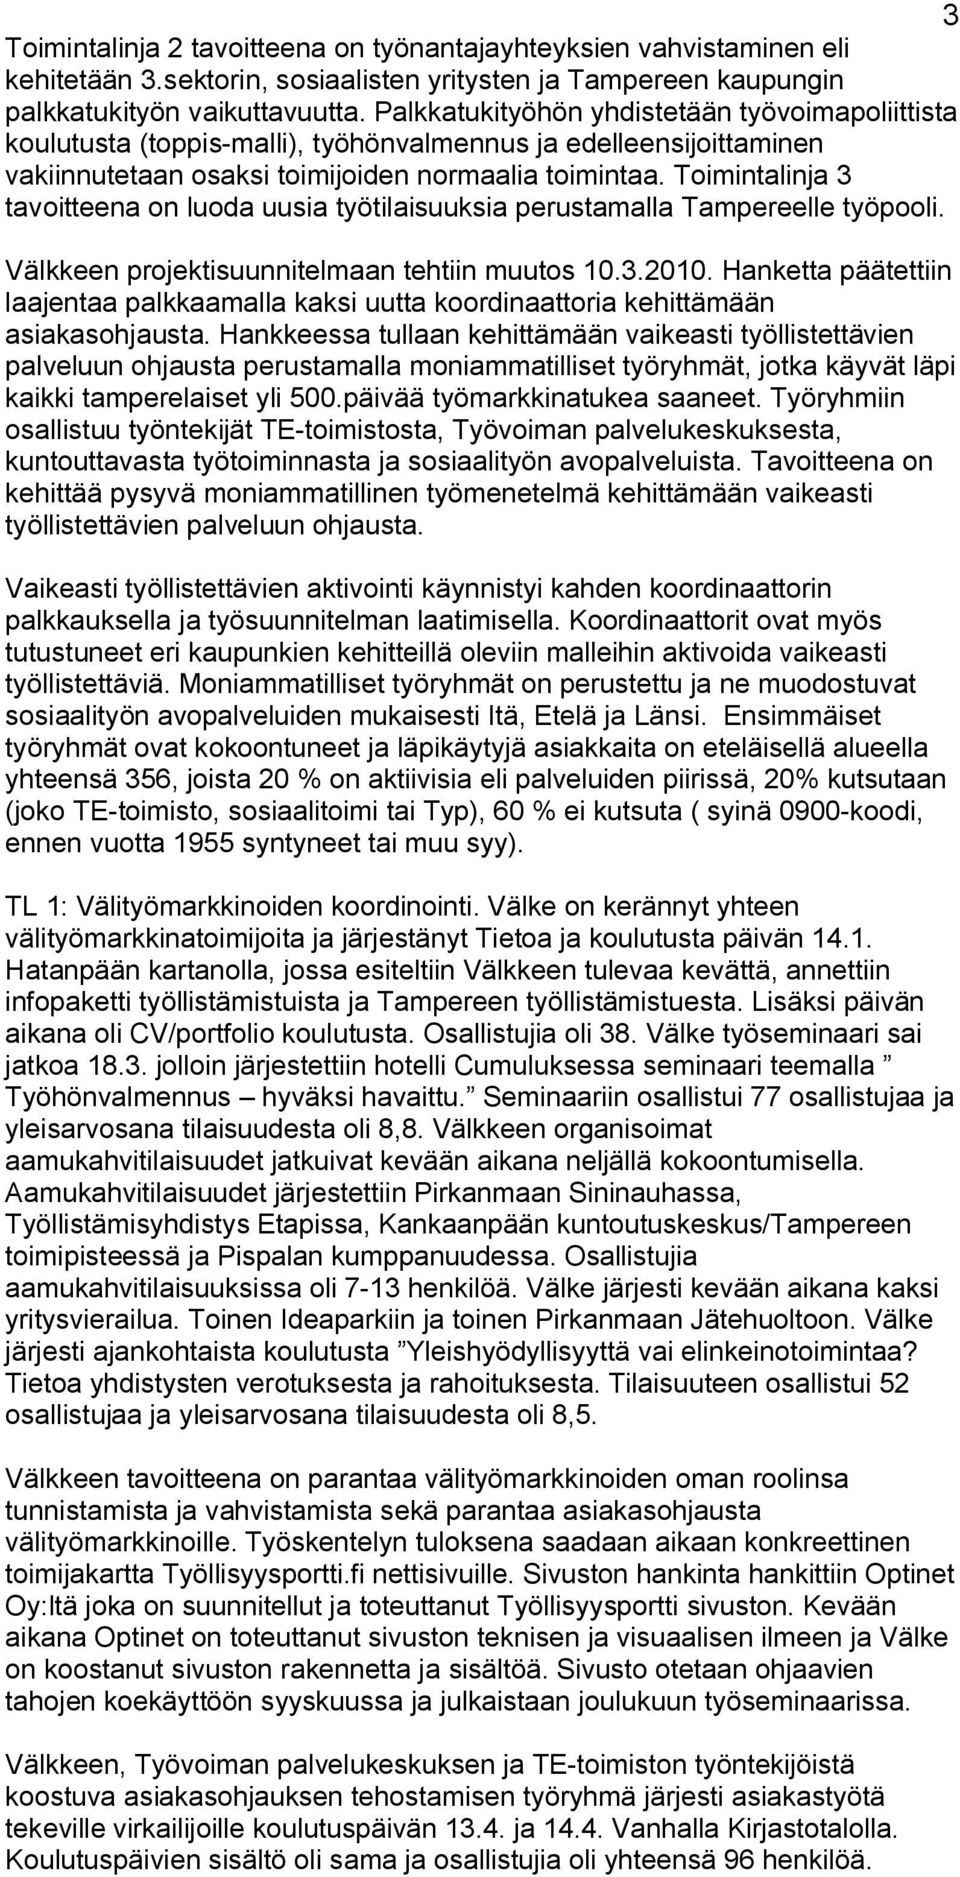 Toimintalinja 3 tavoitteena on luoda uusia työtilaisuuksia perustamalla Tampereelle työpooli. Välkkeen projektisuunnitelmaan tehtiin muutos 10.3.2010.